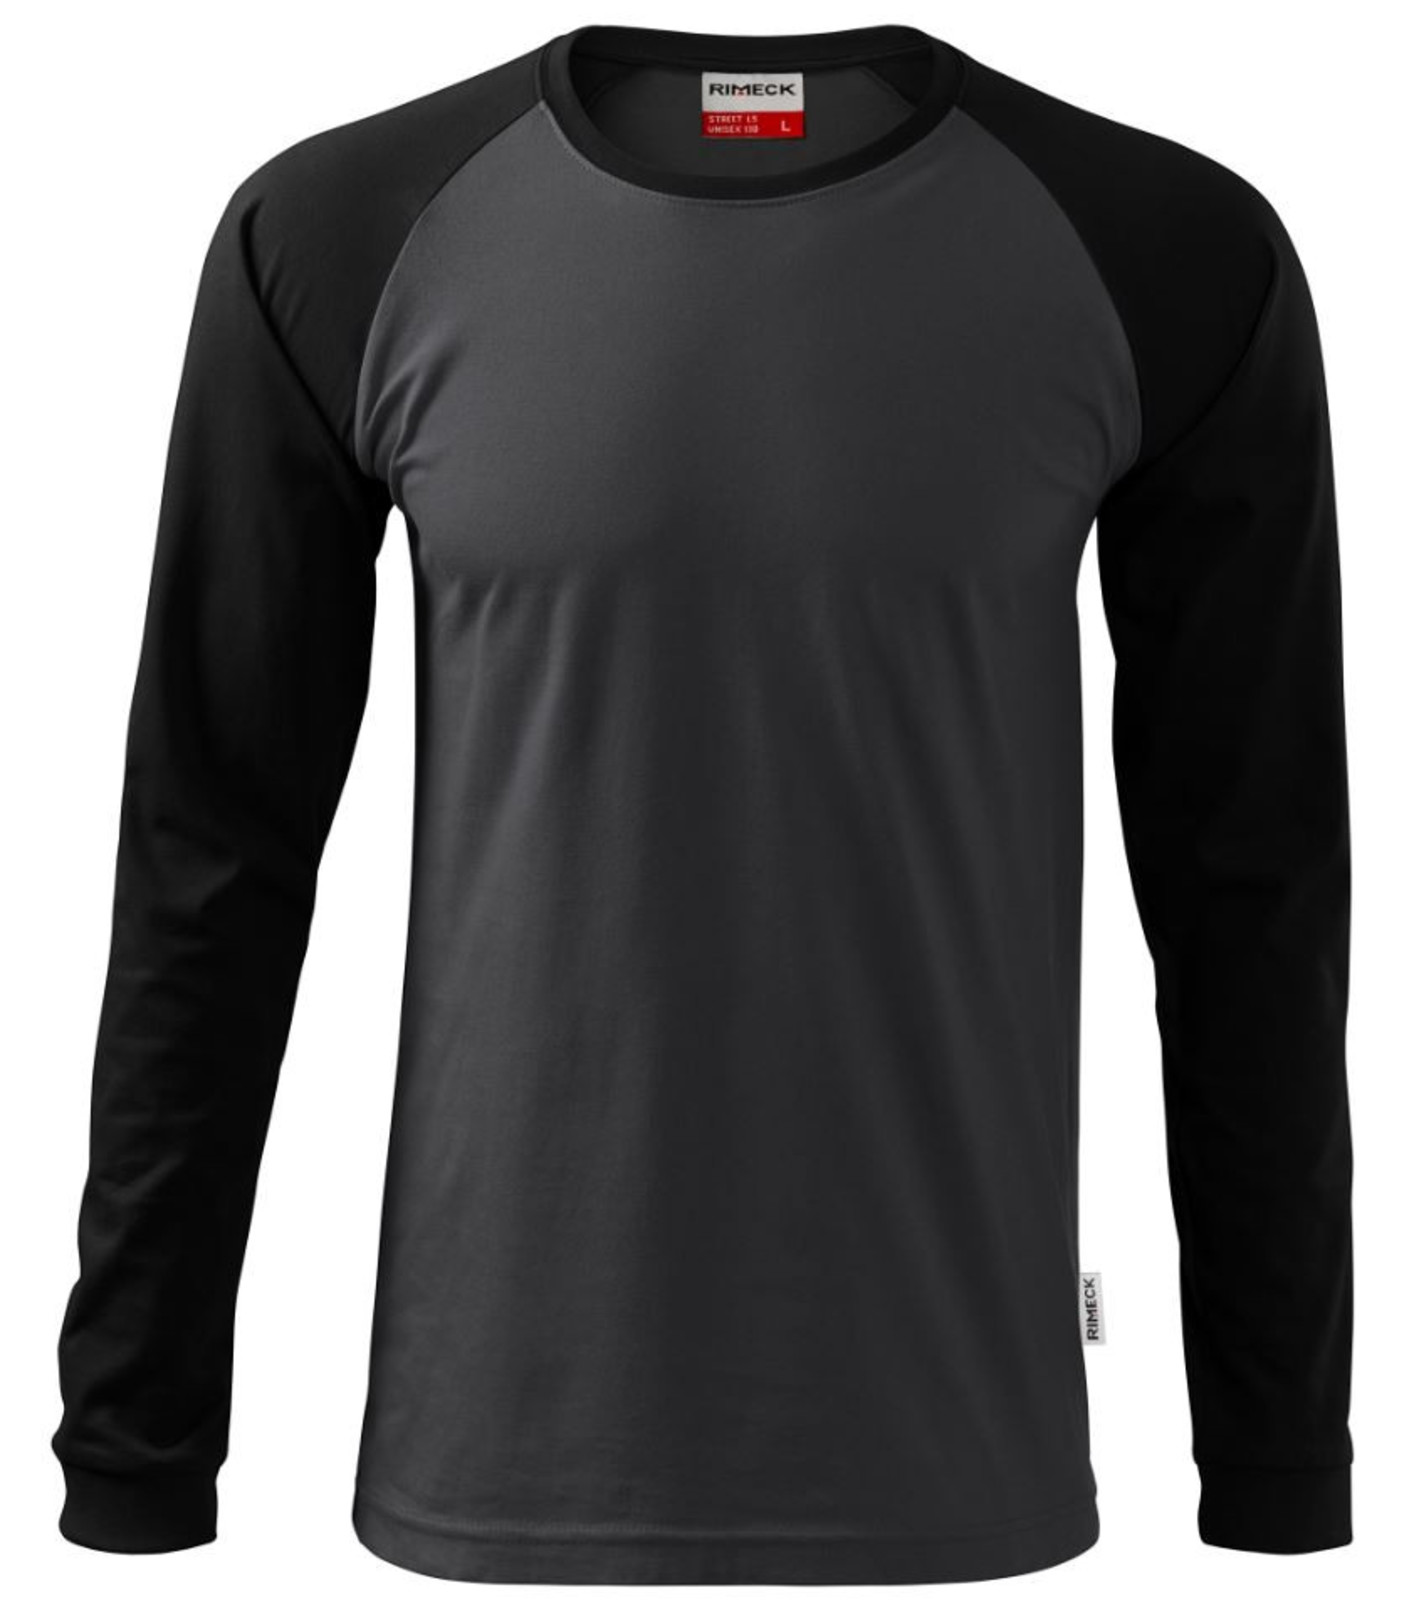 Unisex tričko s dlhým rukávom Rimeck Street LS 130 - veľkosť: 4XL, farba: sivá/čierna